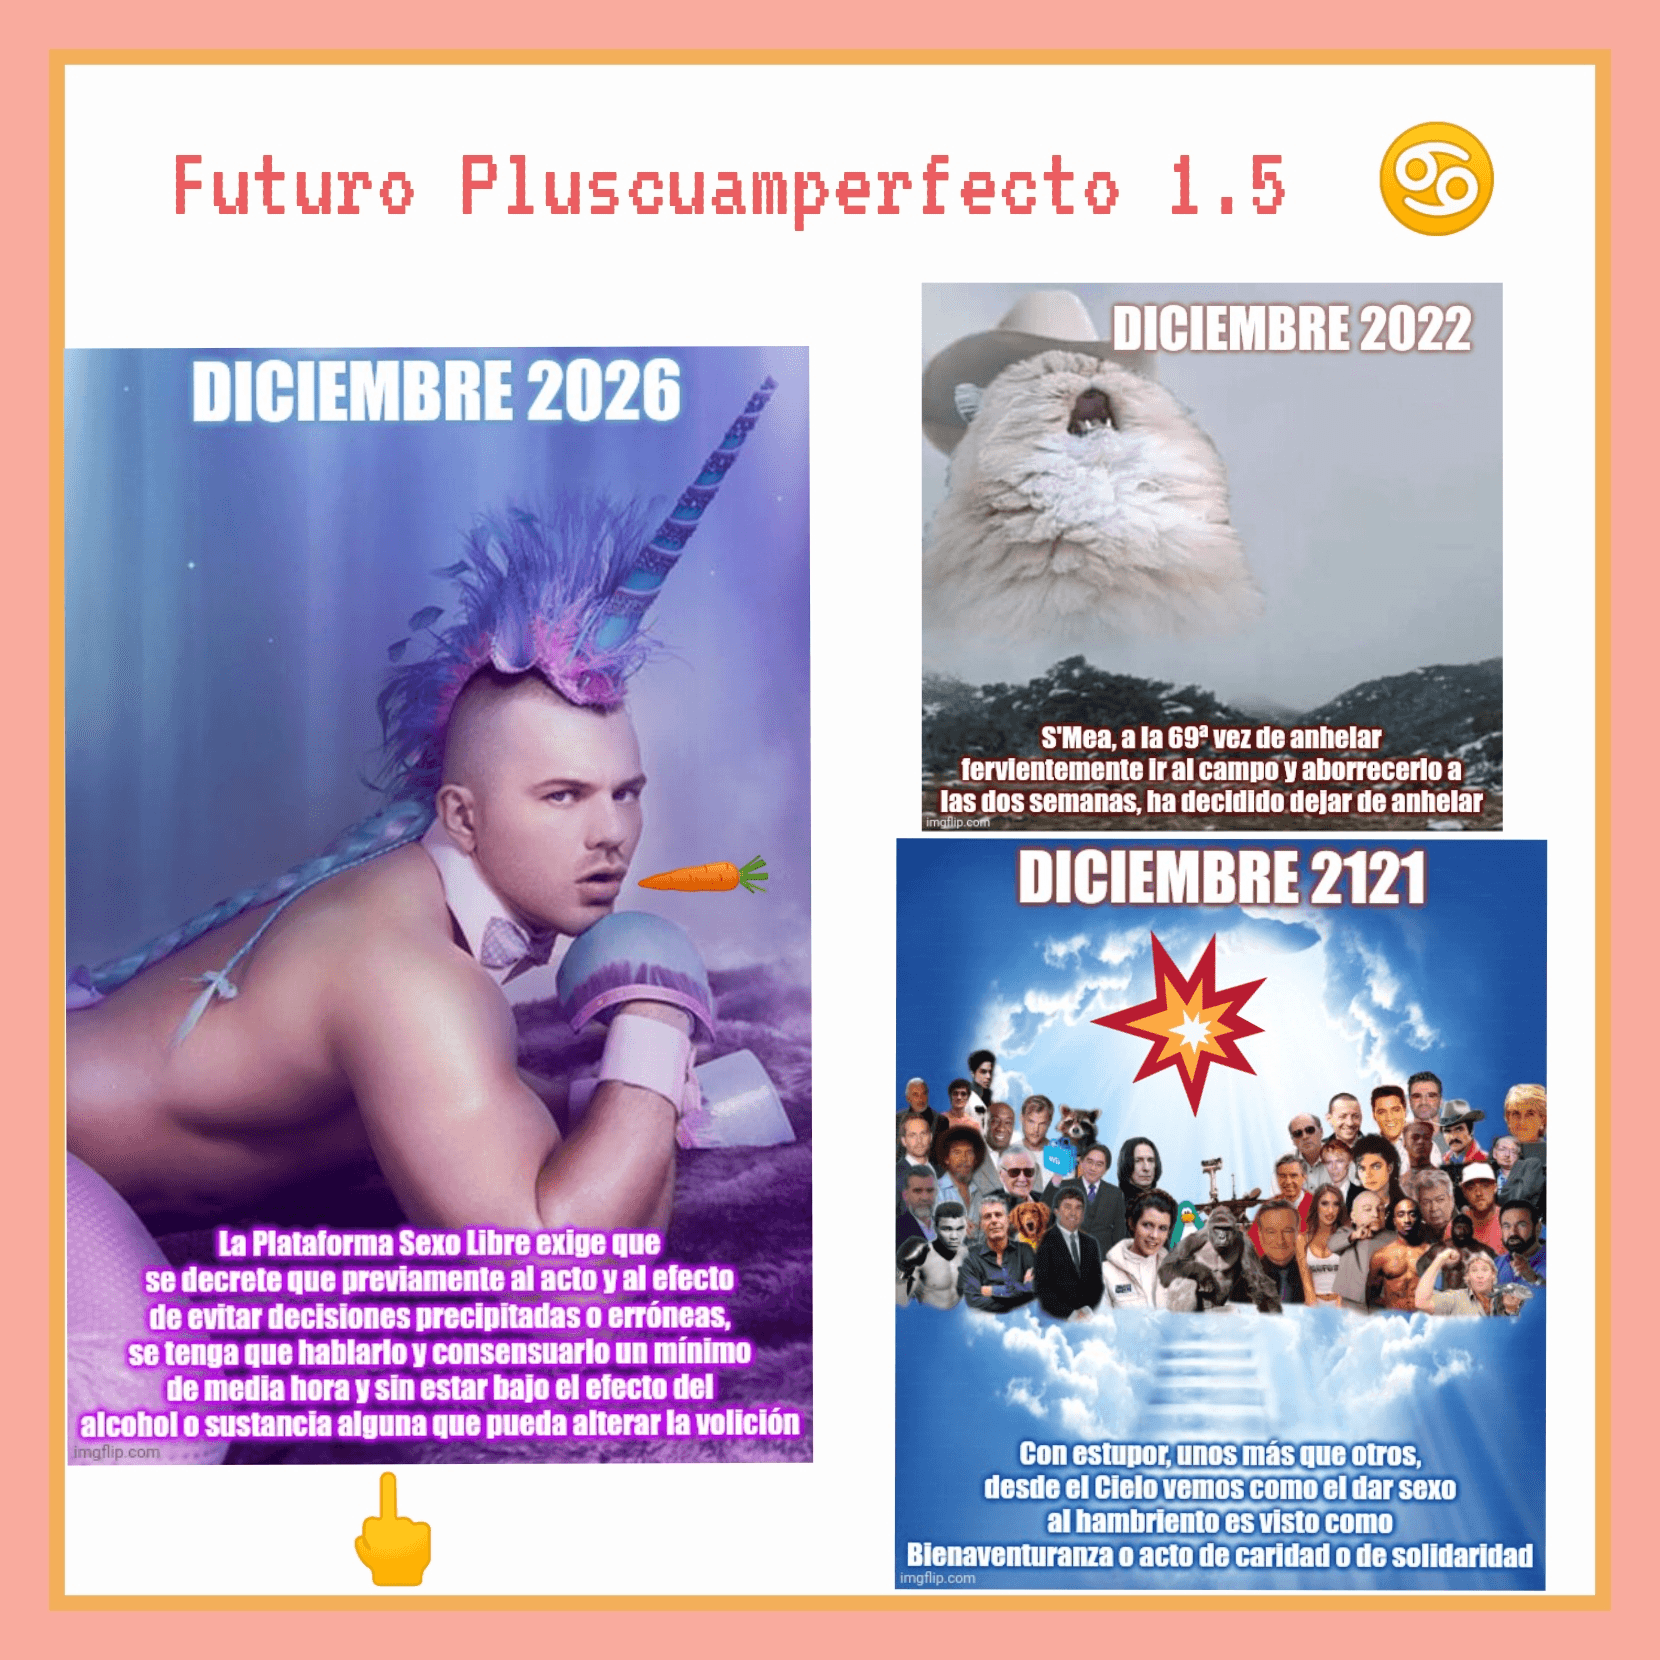 Futuro Pluscuamperfecto 1.5